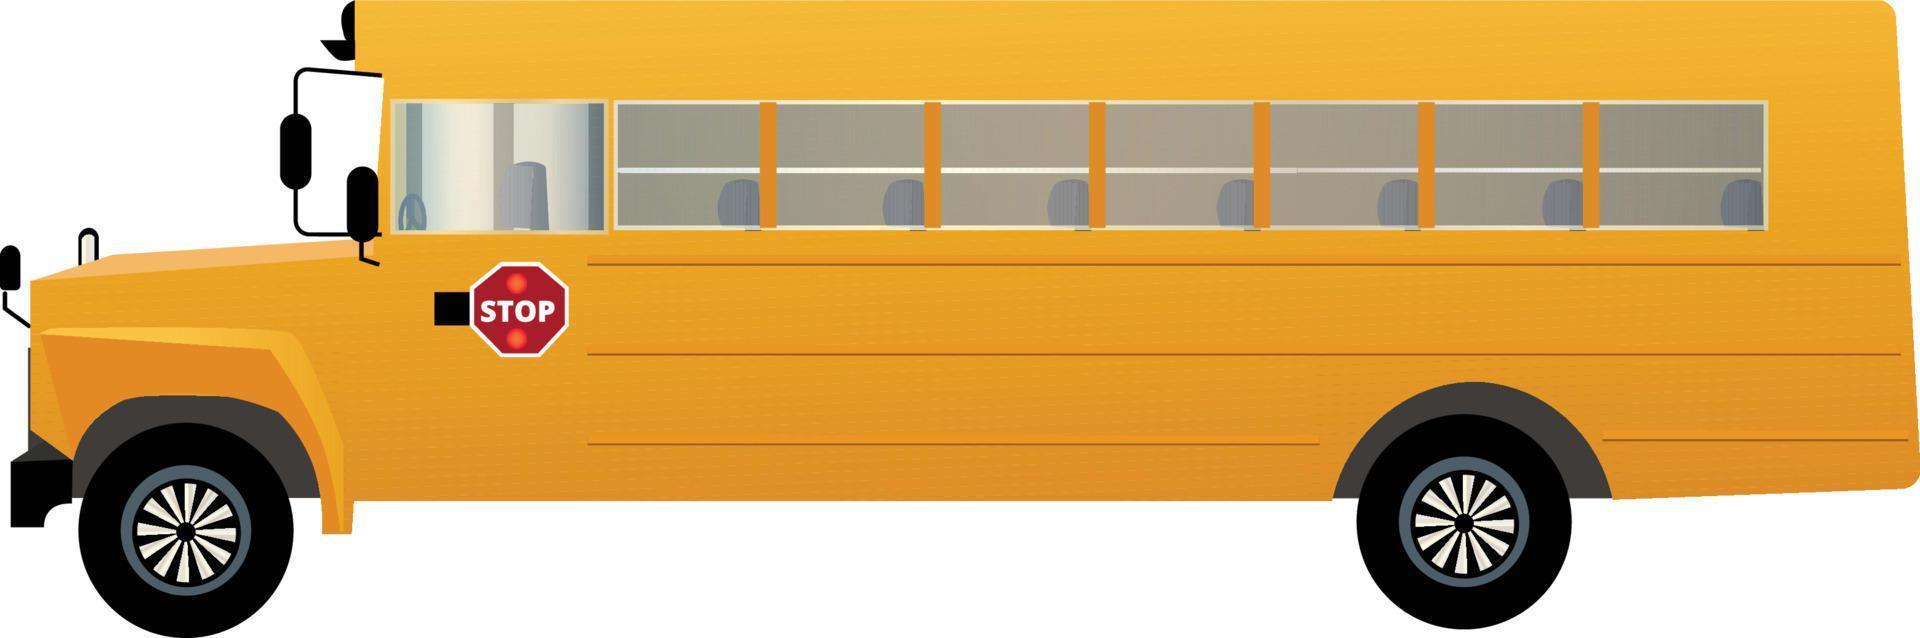 Seitenansicht des Schulbusses vektor